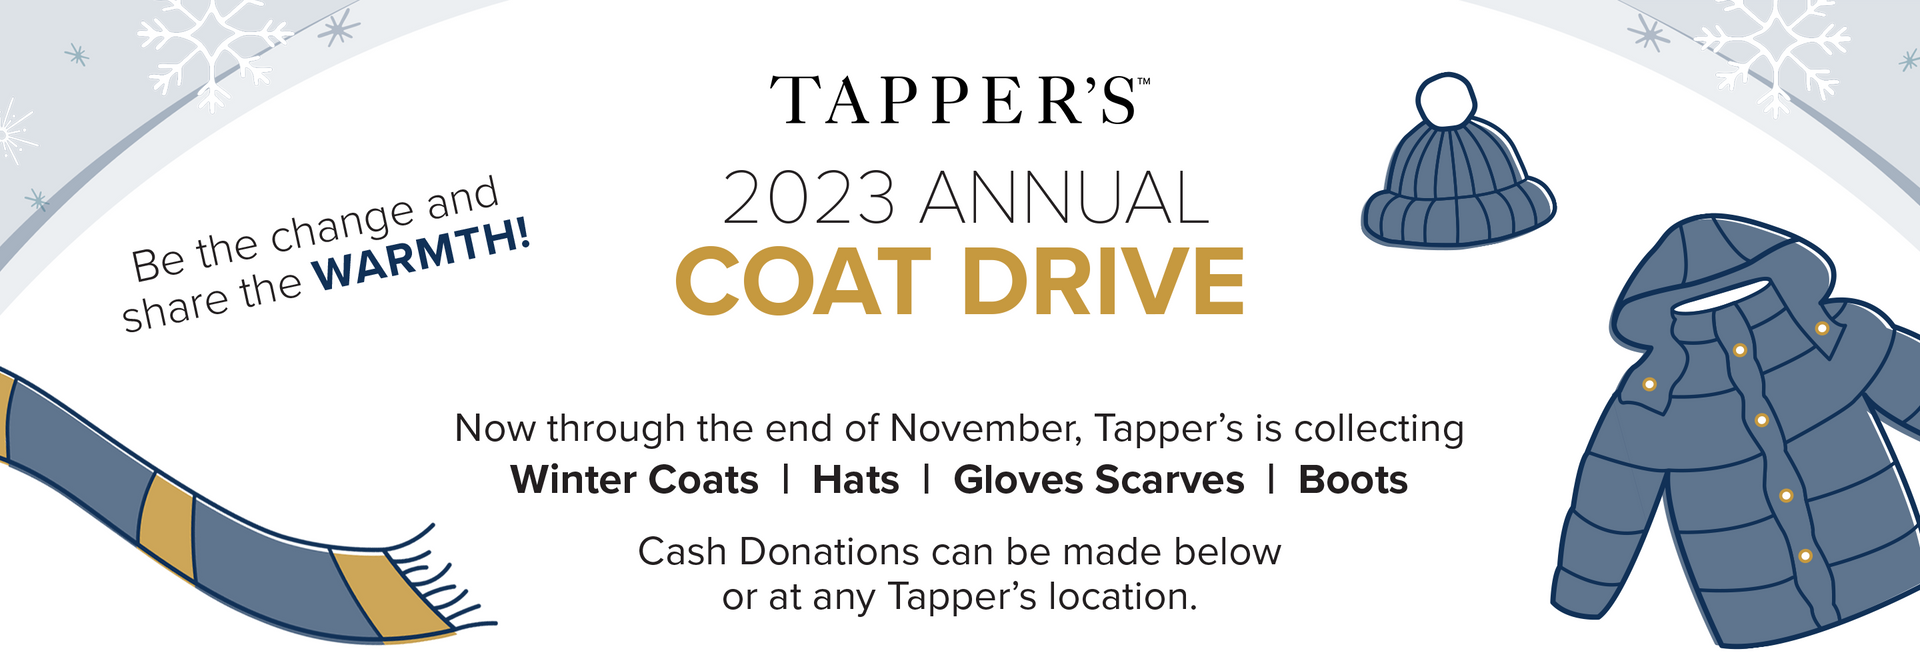 Tapper's 2023 Annual Coat Drive